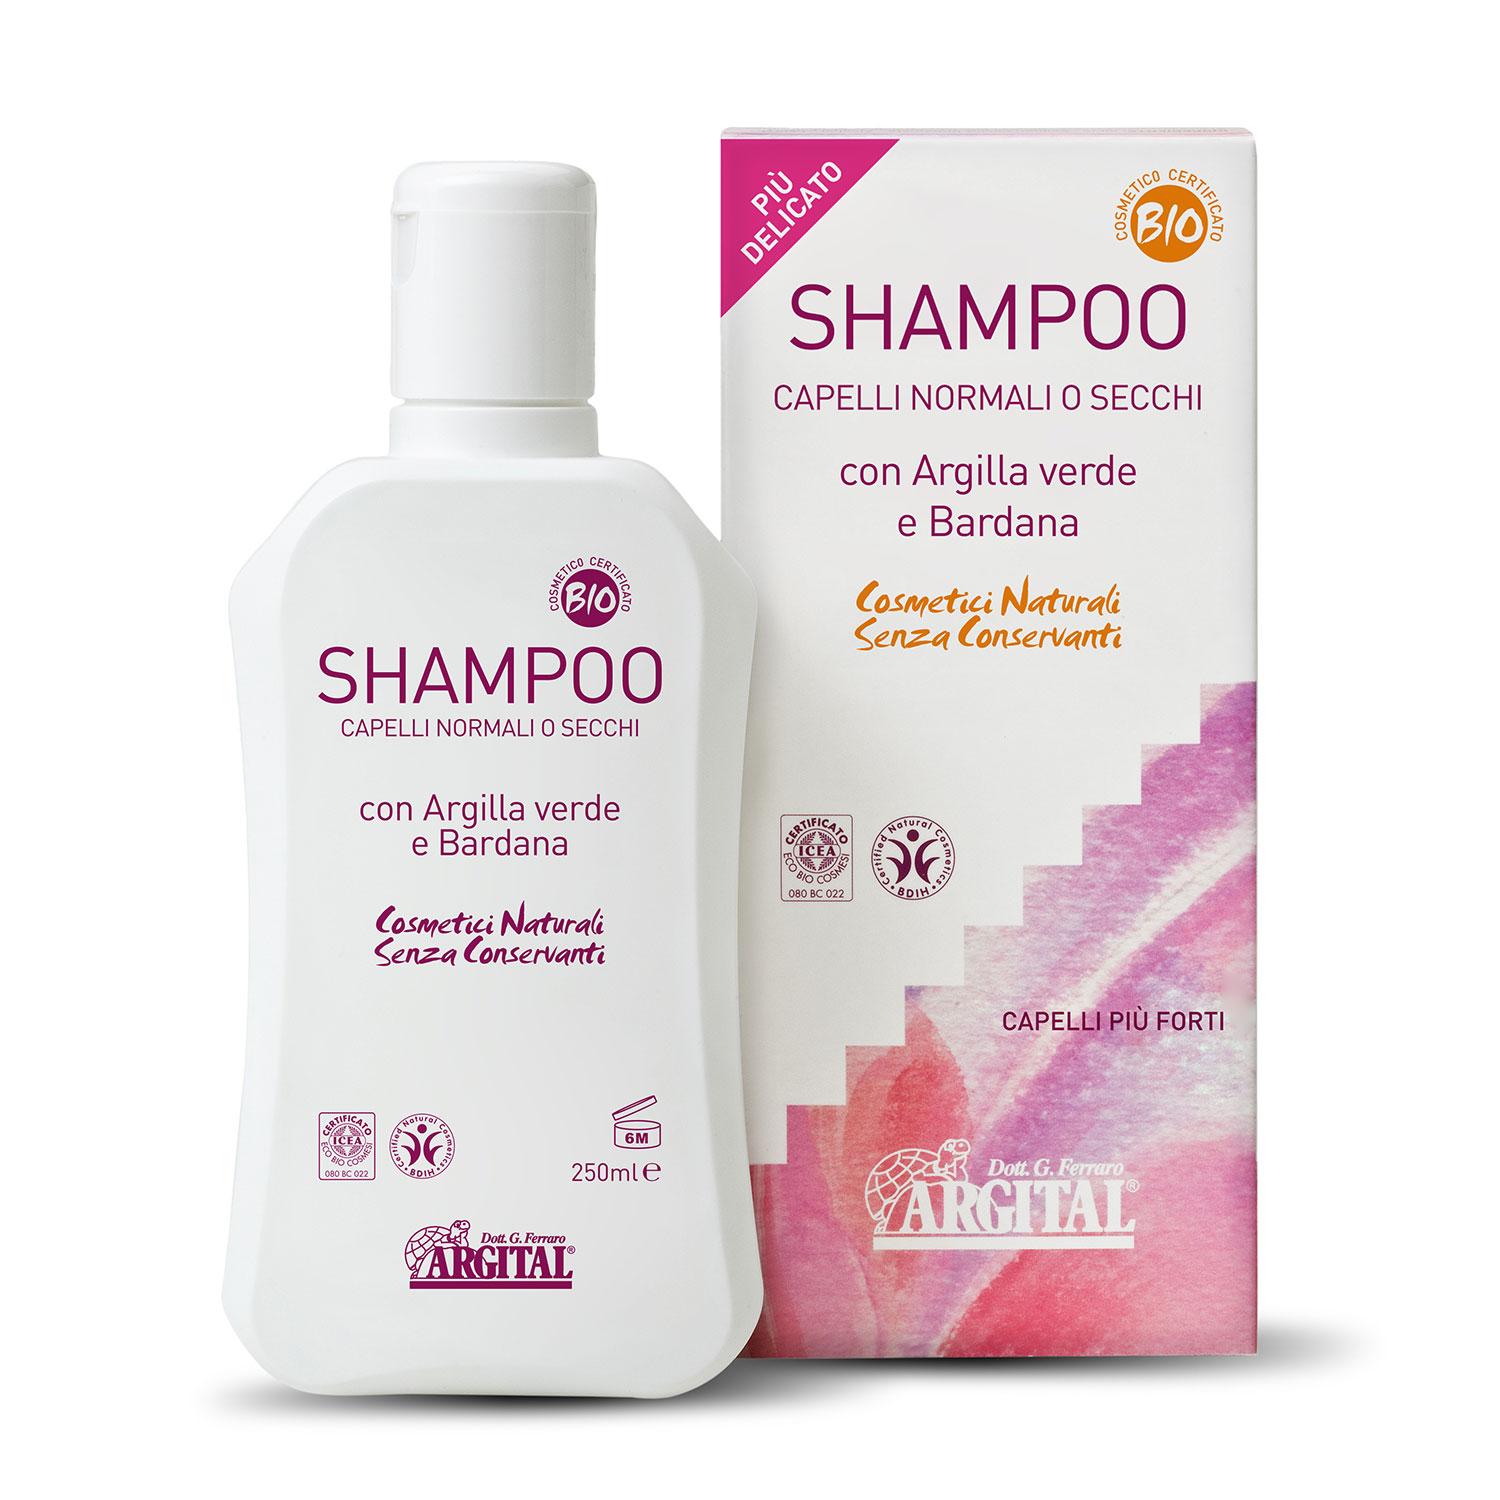 Argital Šampon na normální a suché vlasy s lopuchovým kořenem 250 ml